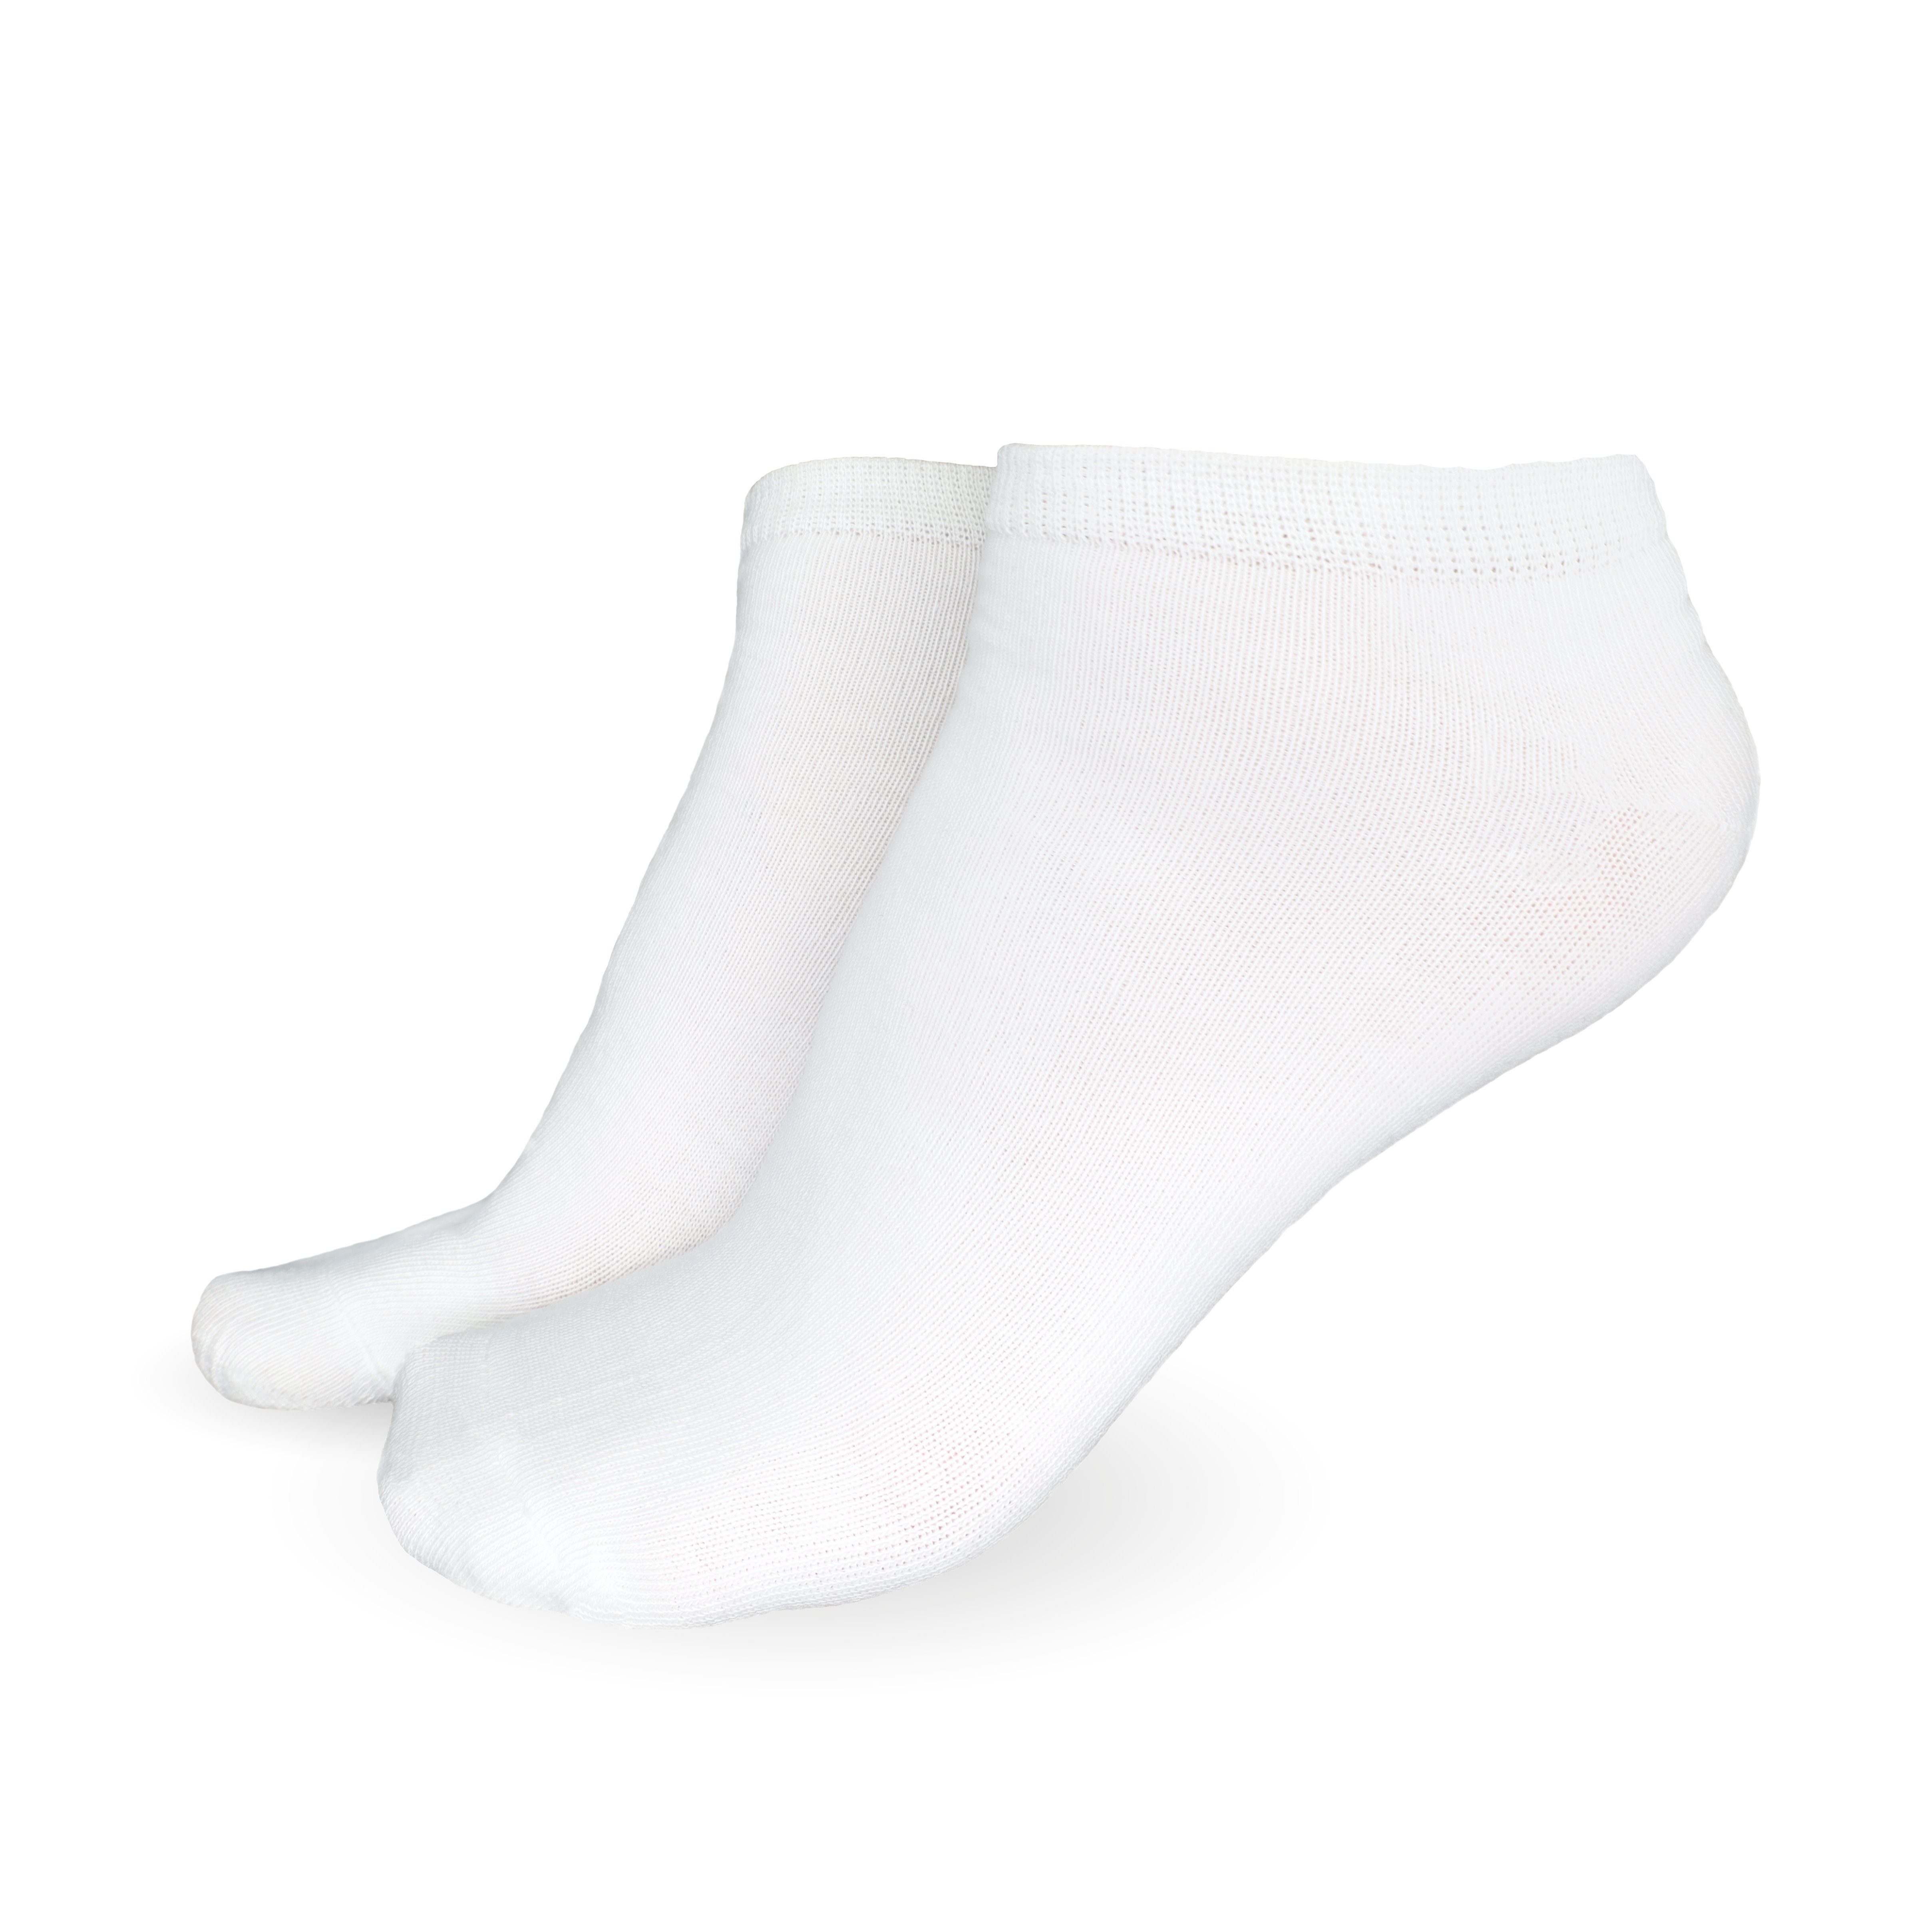 Socken aus & Paar) Weiß Herren Damen atmungsaktive (Größen SO.I 5-20 Baumwolle Freizeitsocken 5x Socken Sneaker Unisex 35-46,